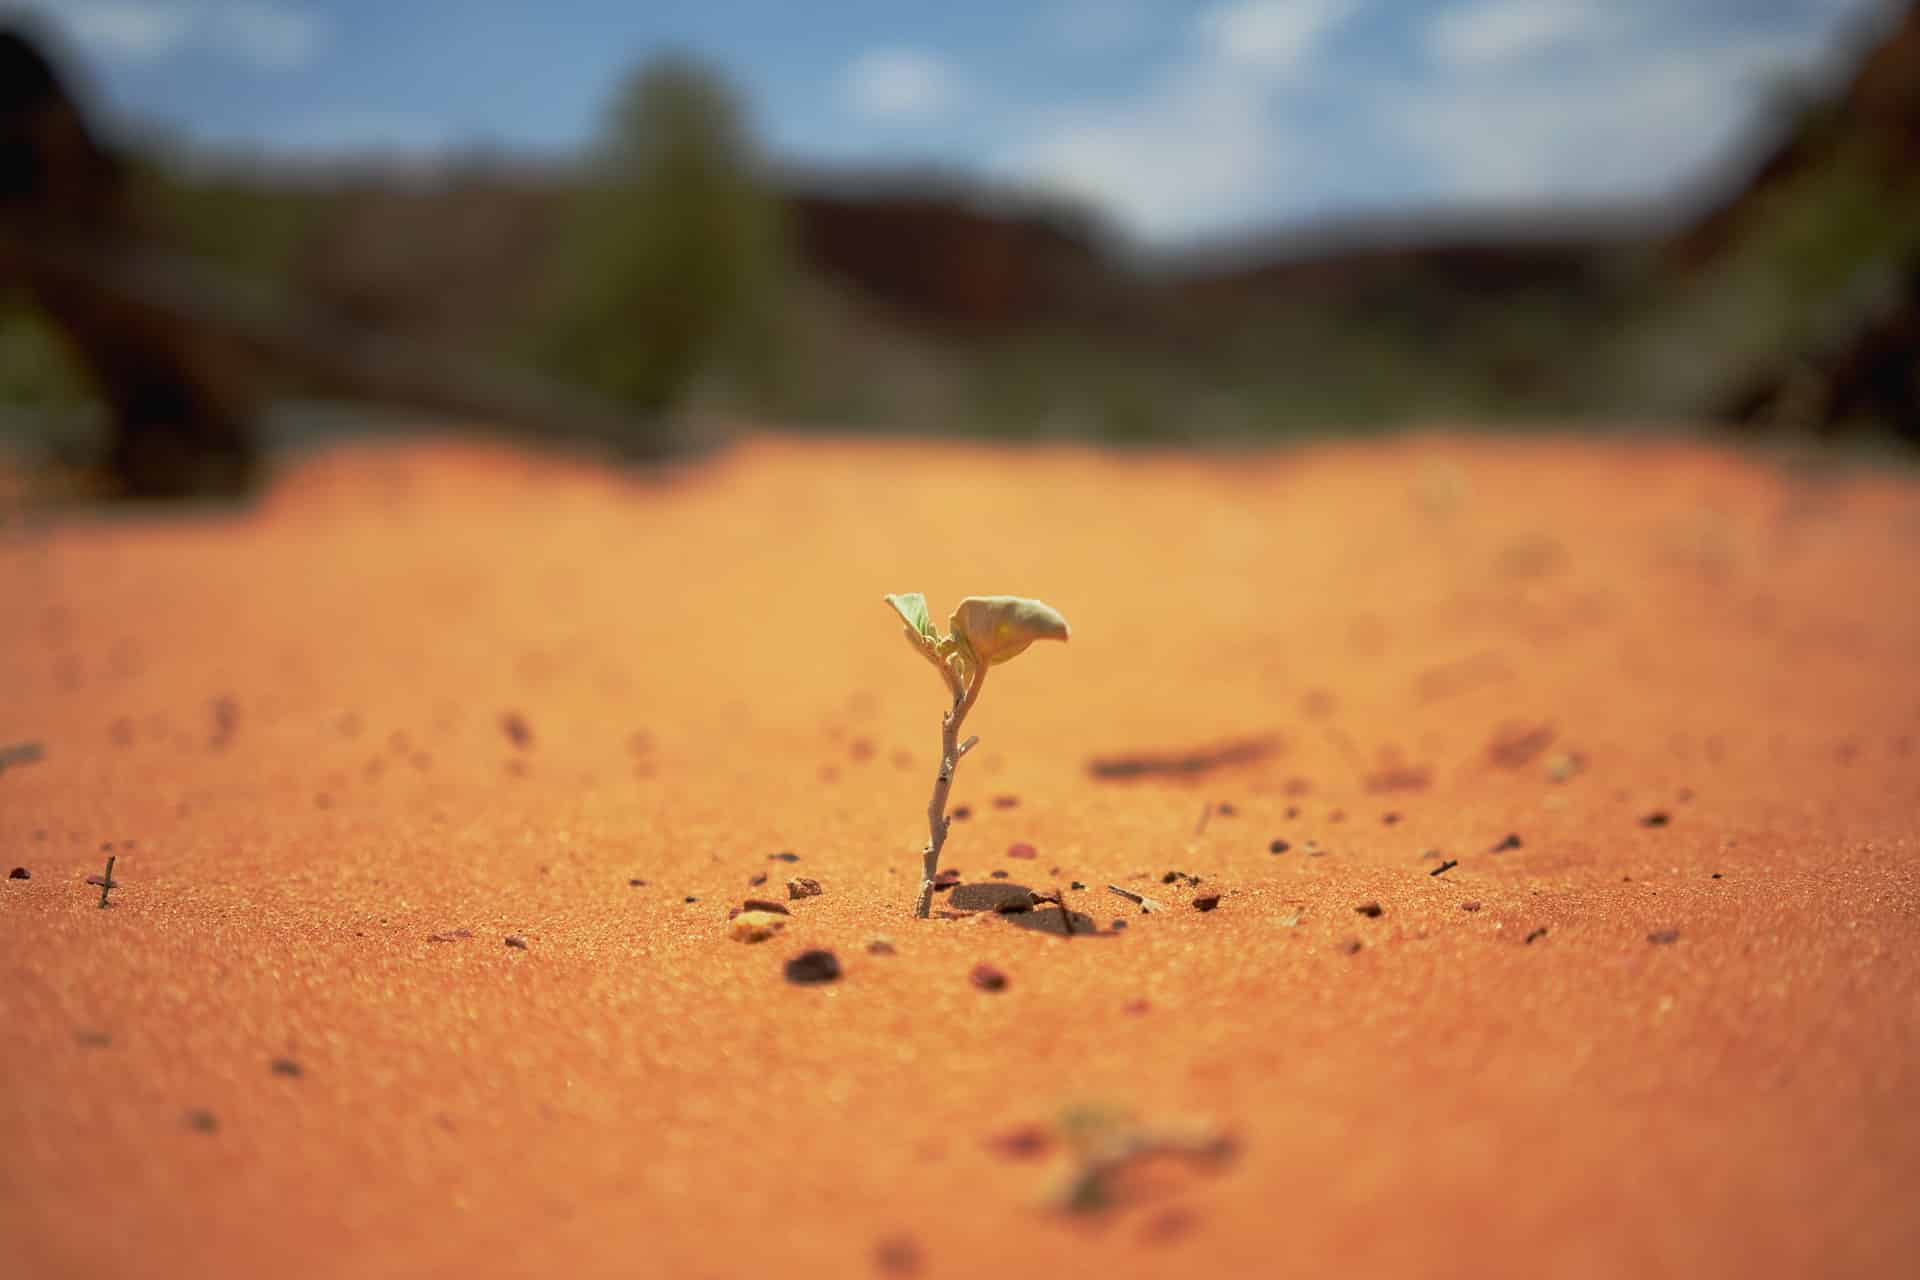 Auf dem Bild ist eine wachsende Pflanze zu sehen, die in einer Wüstenlandschaft als einzige überlebt hat.